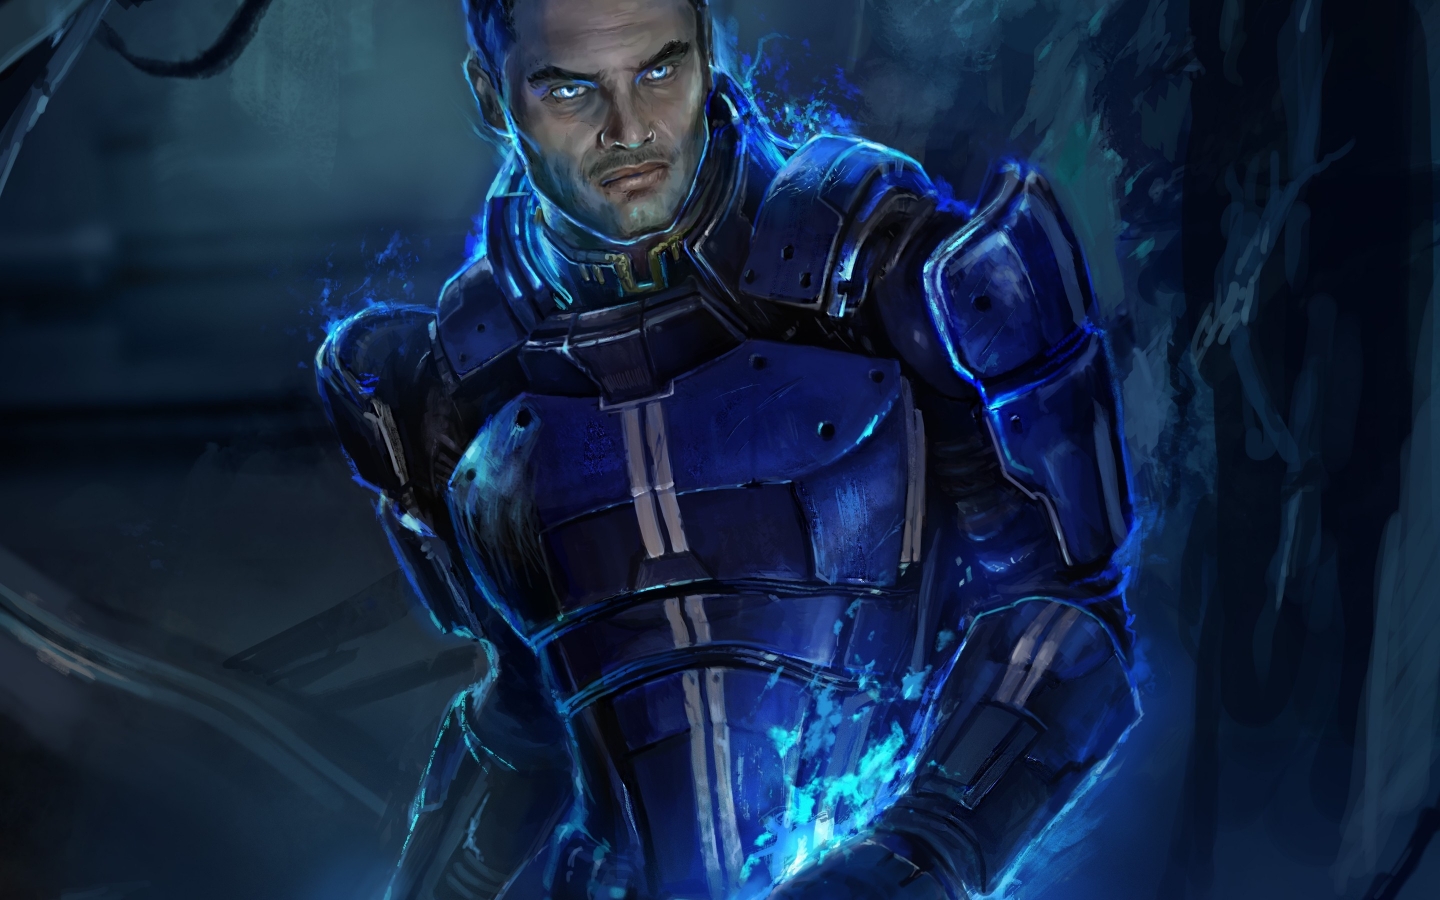 Kaidan Alenko Mass Effect 3 for 1440 x 900 widescreen resolution